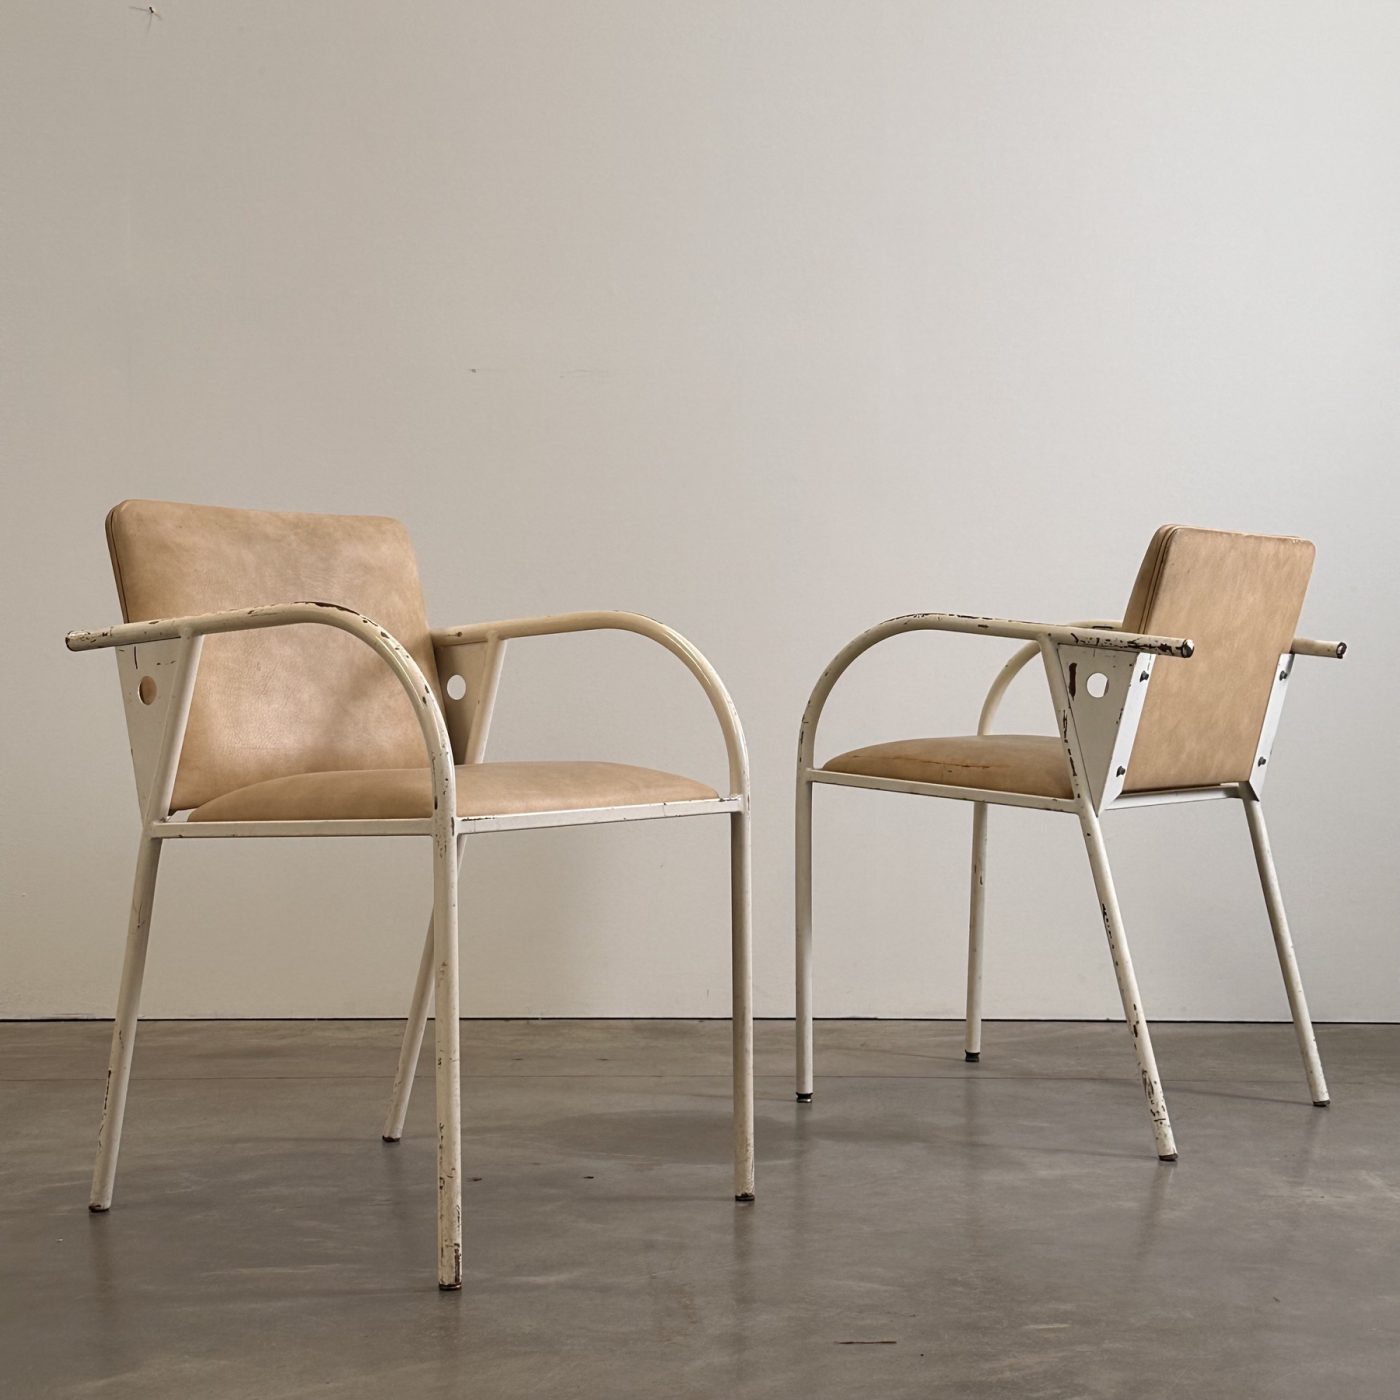 objet-vagabond-metal-armchairs0003